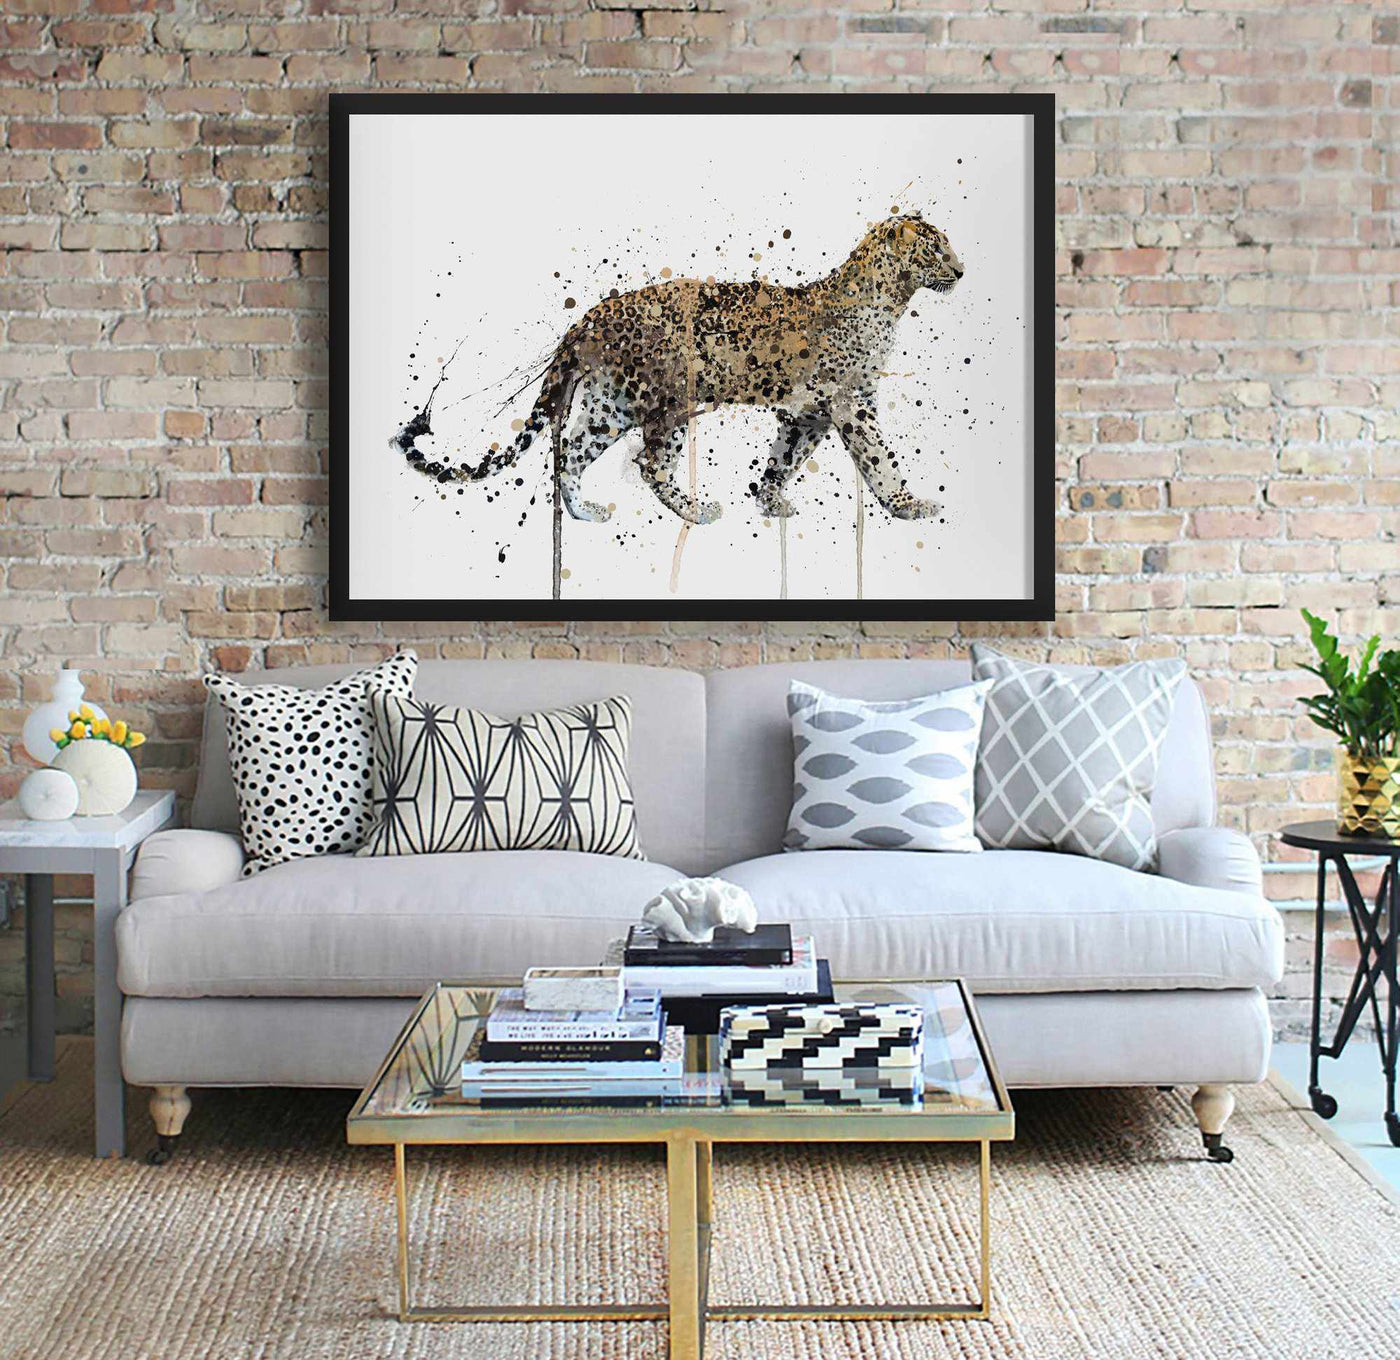 Leopard Wall Art Print